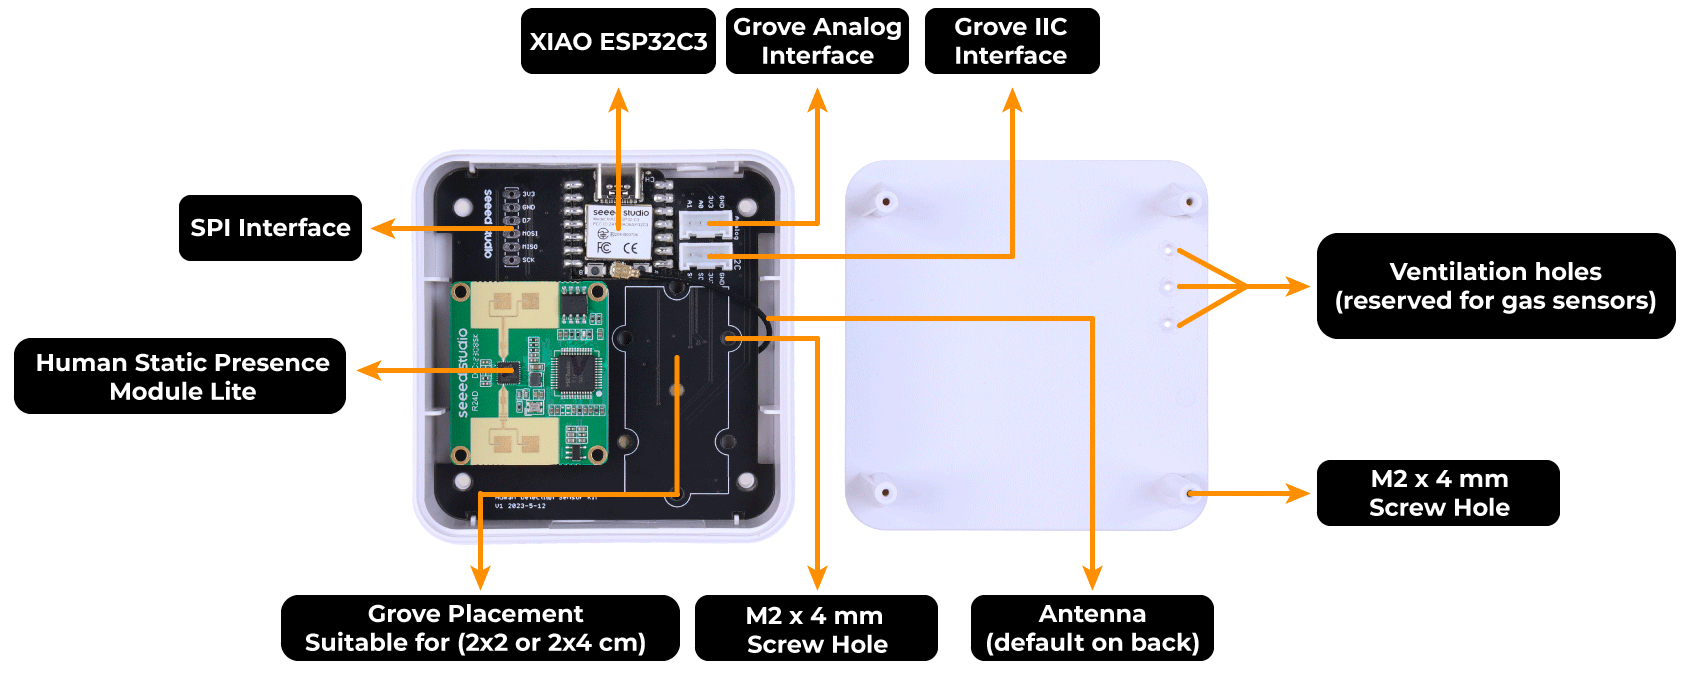 Kit de Sensor de Detección Humana mmWave de SeeedStudio c/ XIAO ESP32C3